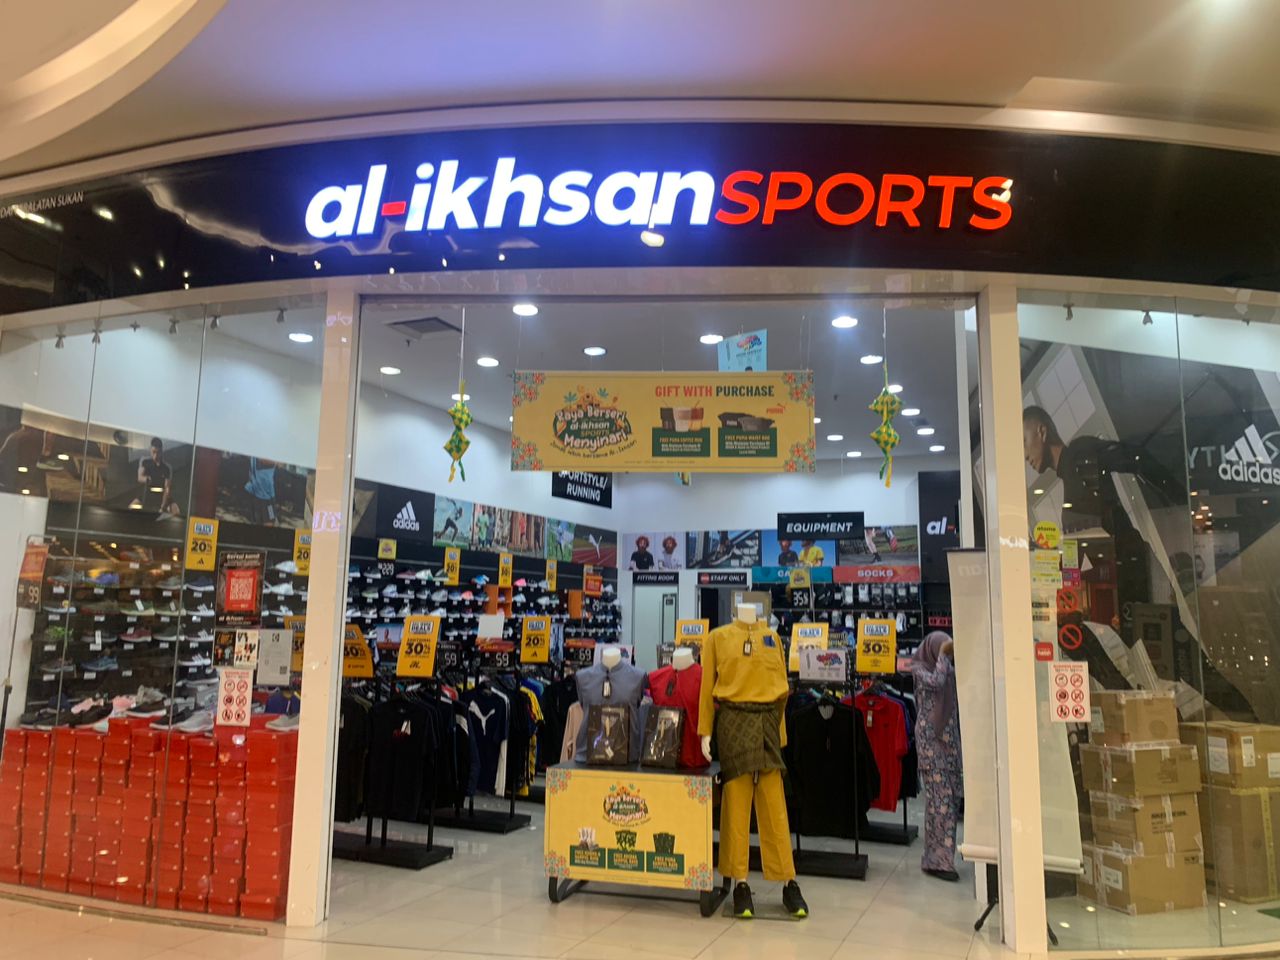 AL-IKHSAN SPORTS